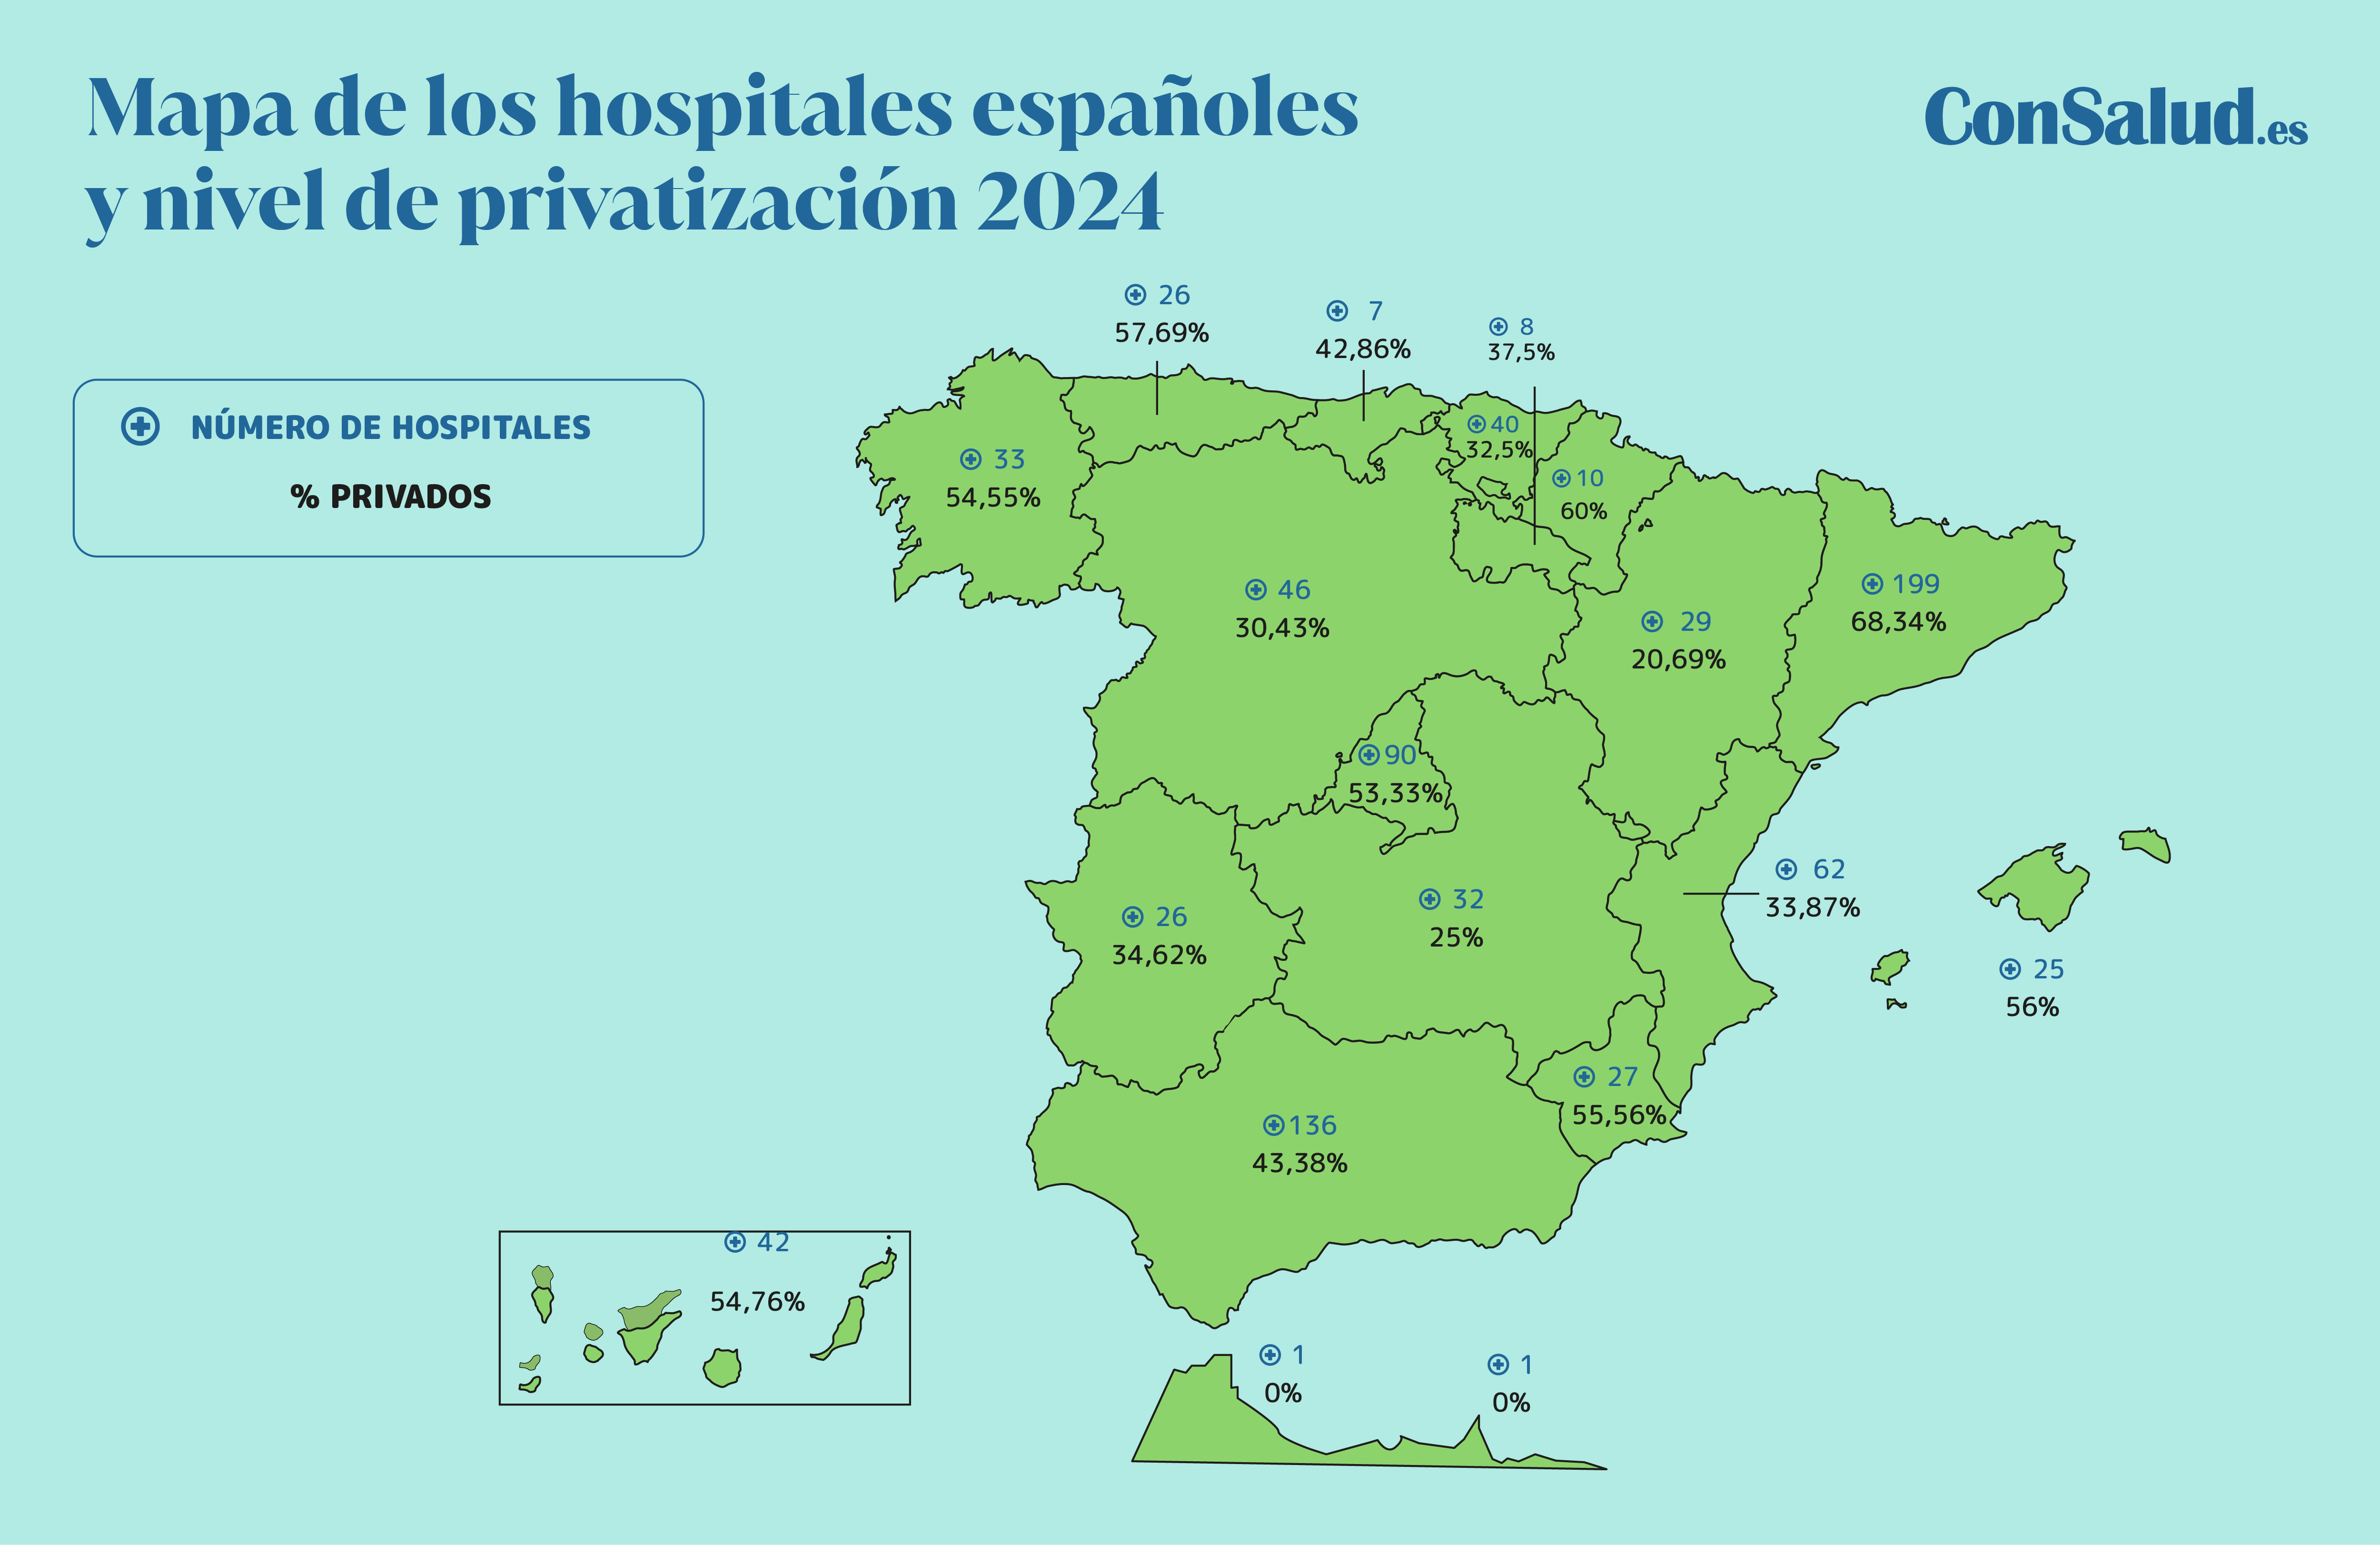 Mapa de los hospitales españoles en 2024